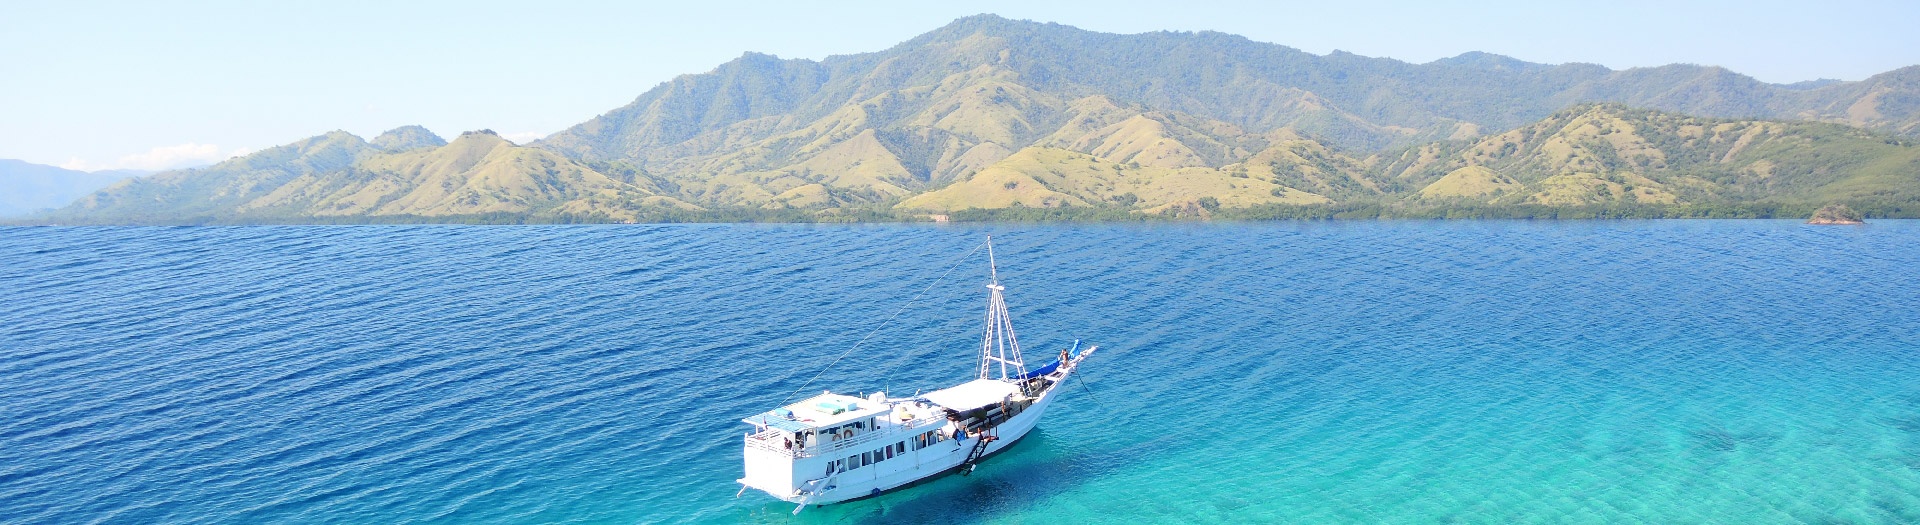 voyage-bateau-croisiere-indonesie